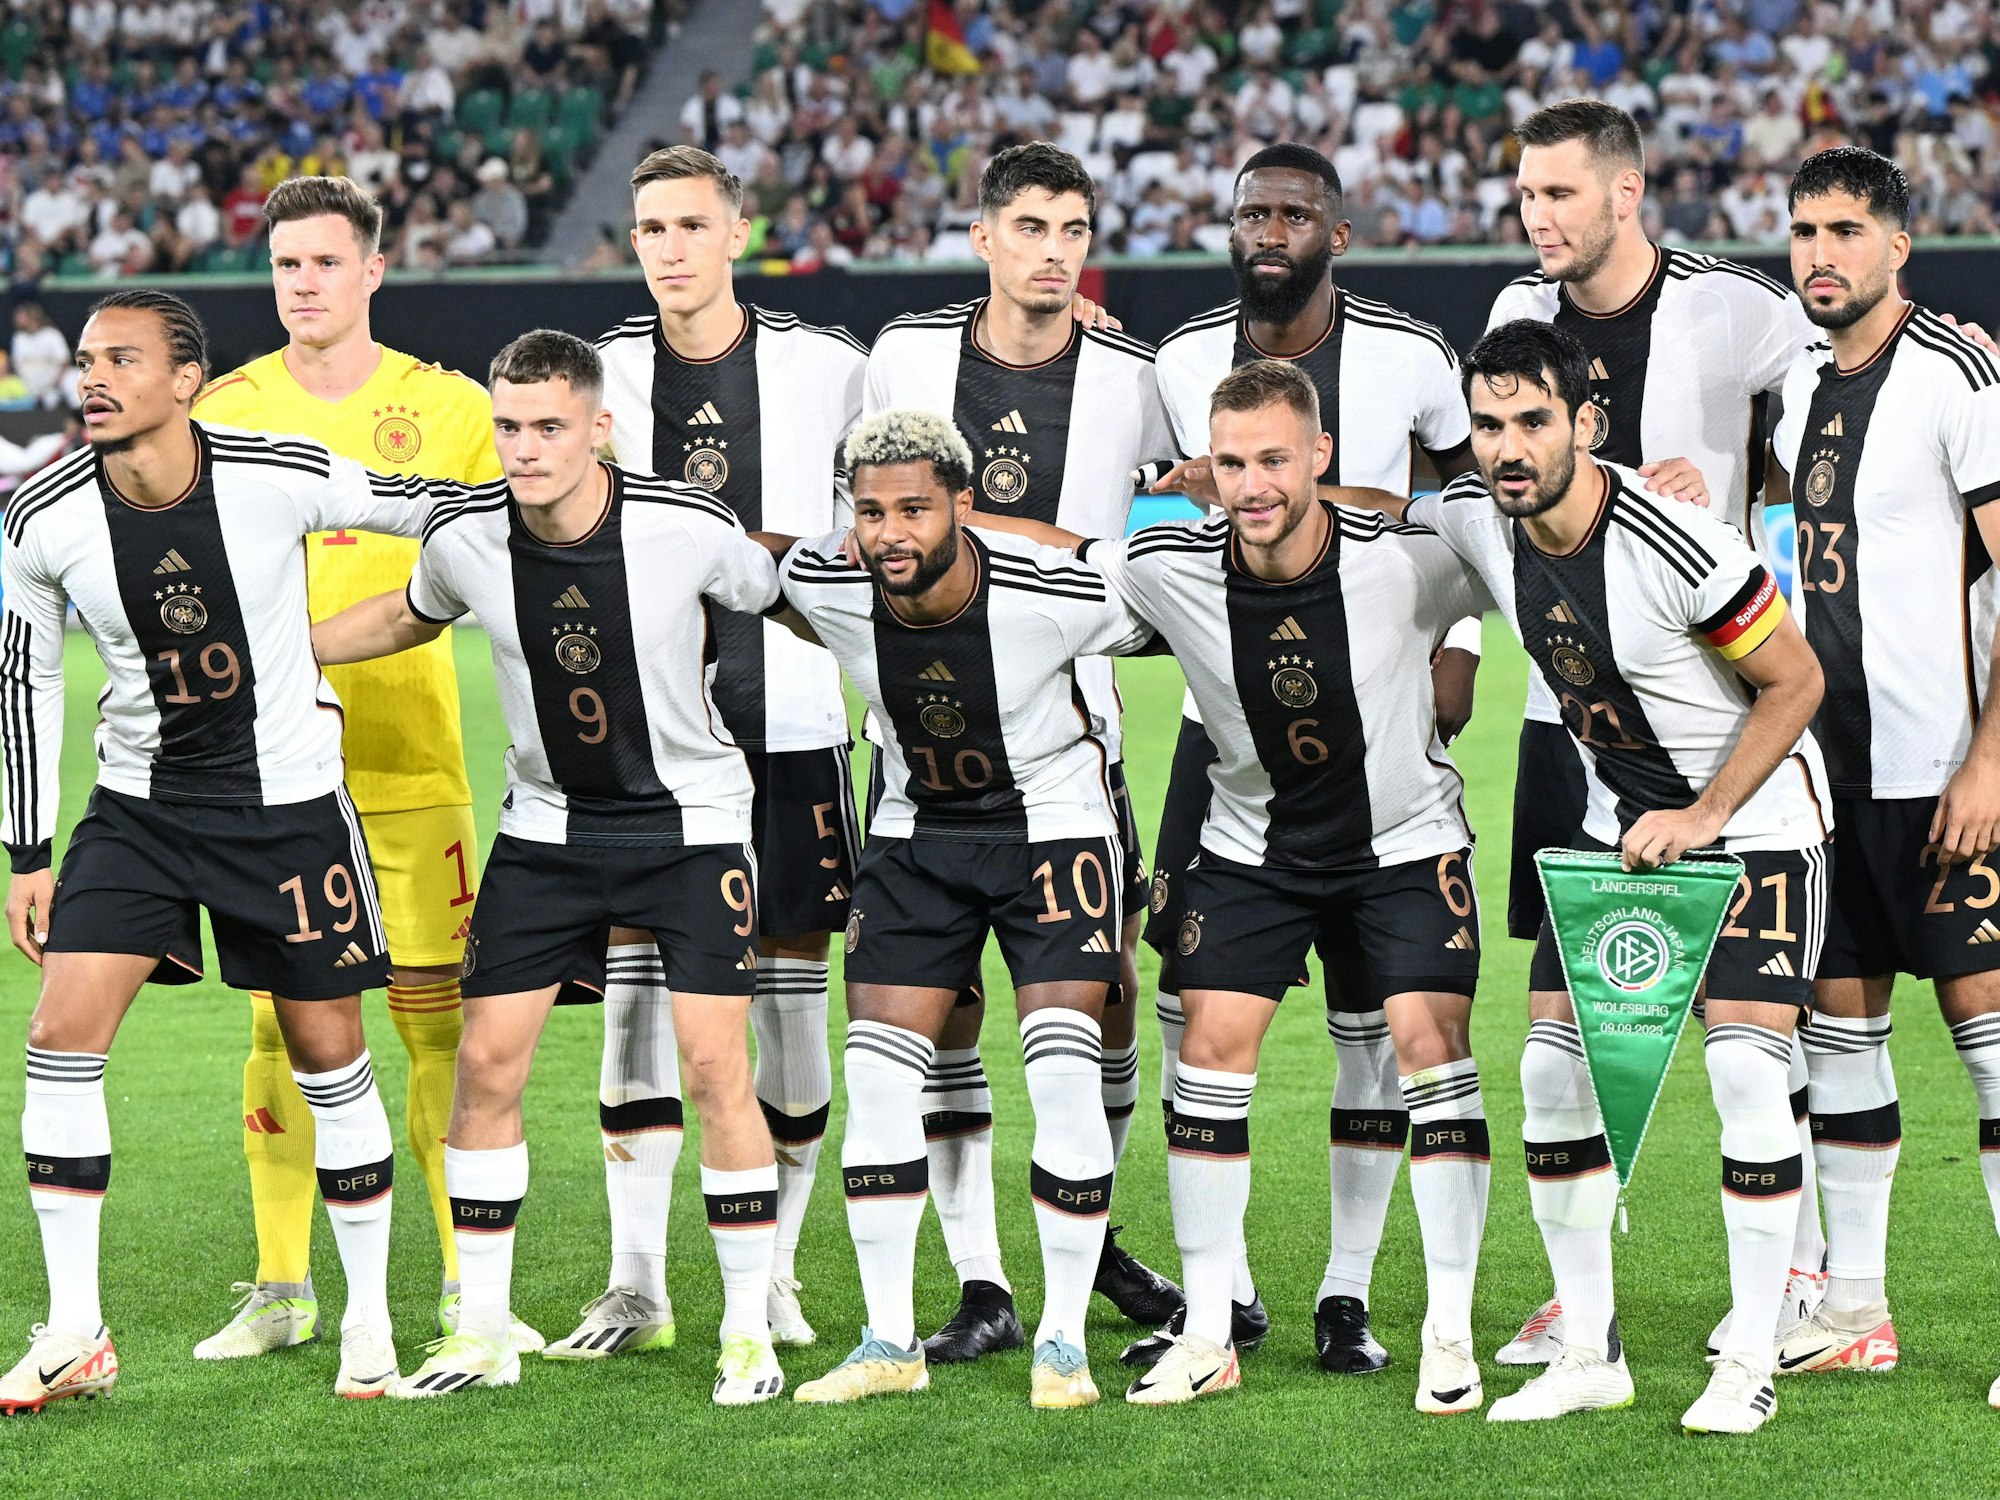 Die Spieler der deutschen Nationalmannschaft haben vor dem Spiel Aufstellung für das Mannschaftsfoto genommen.